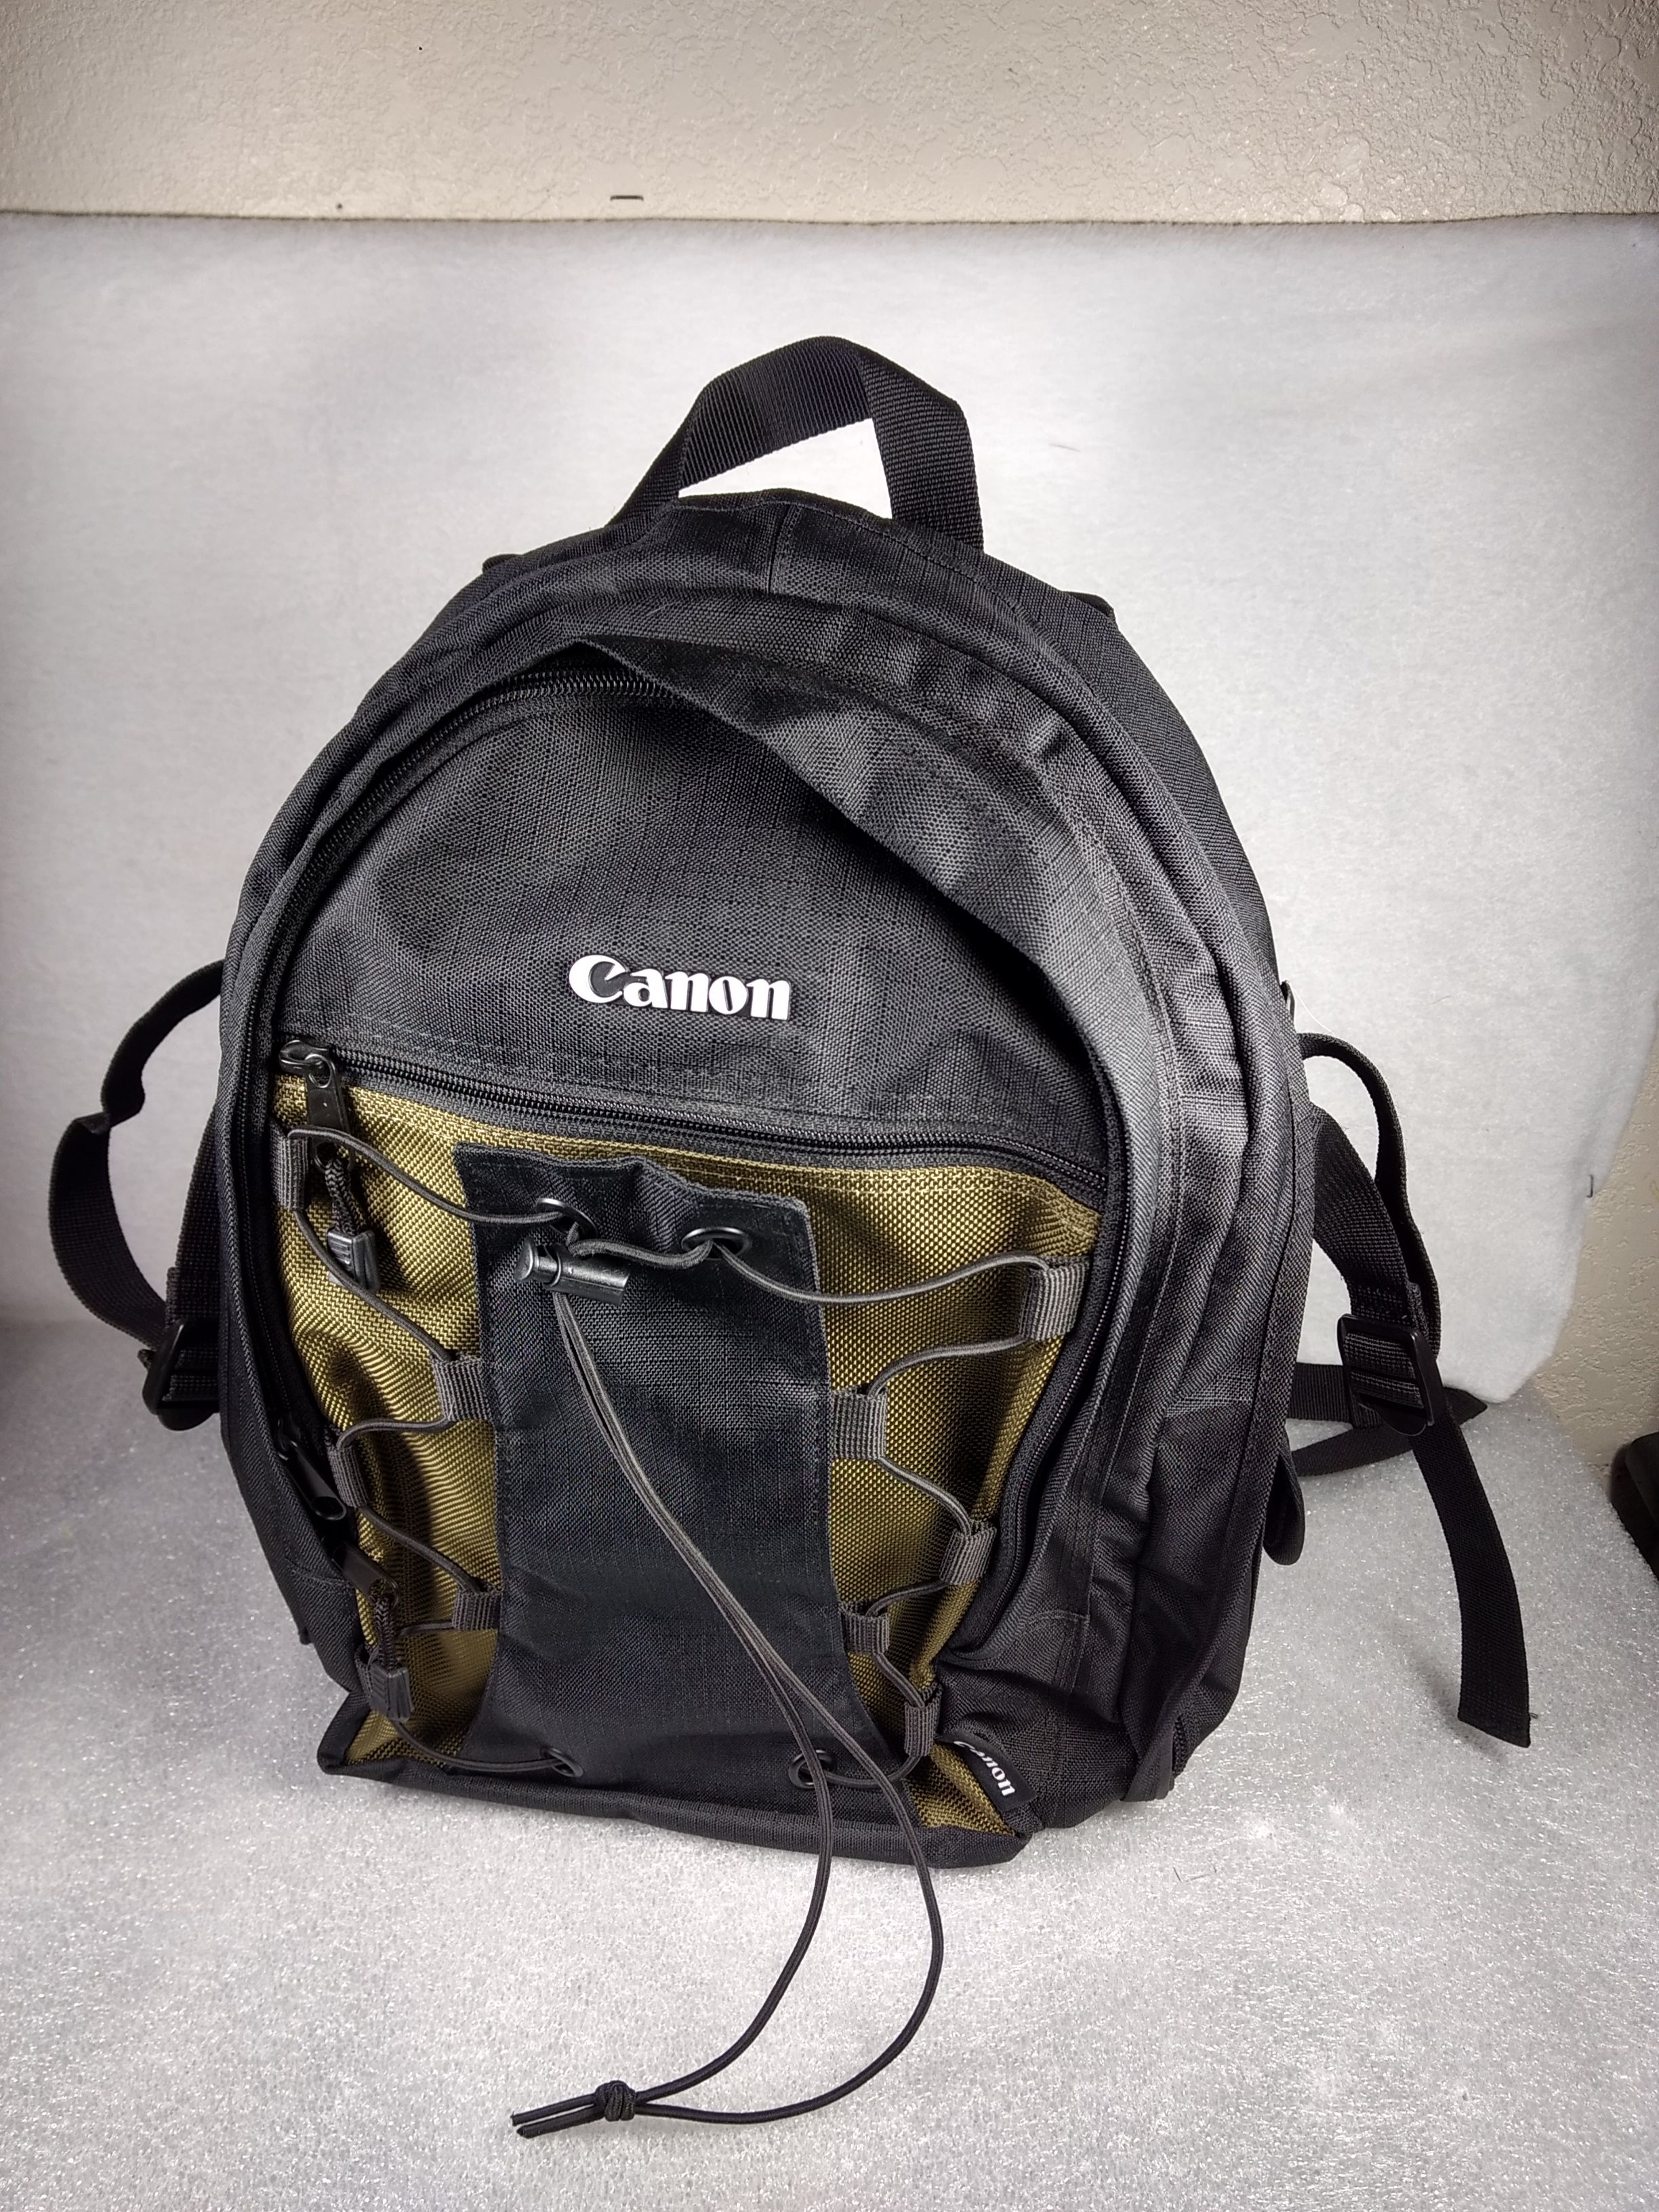 Canon 200 EG Deluxe DSLR Digital Camera Backpack Black & Olive Green Bag Case